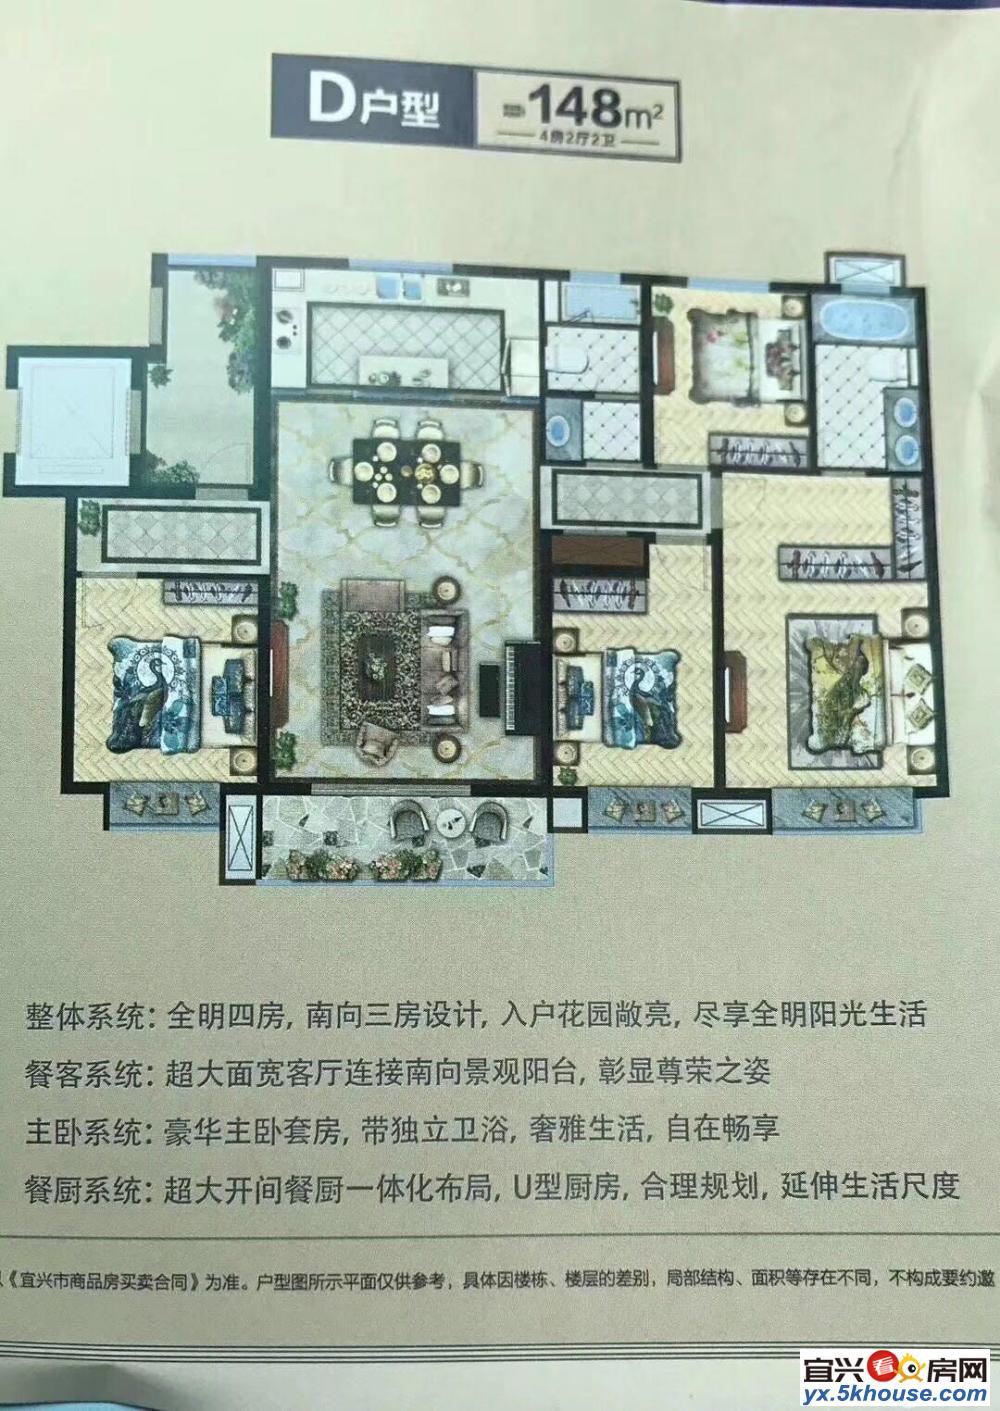 苏宁天氿御城,25楼,107平米,3室1厅,地中海风格高档装